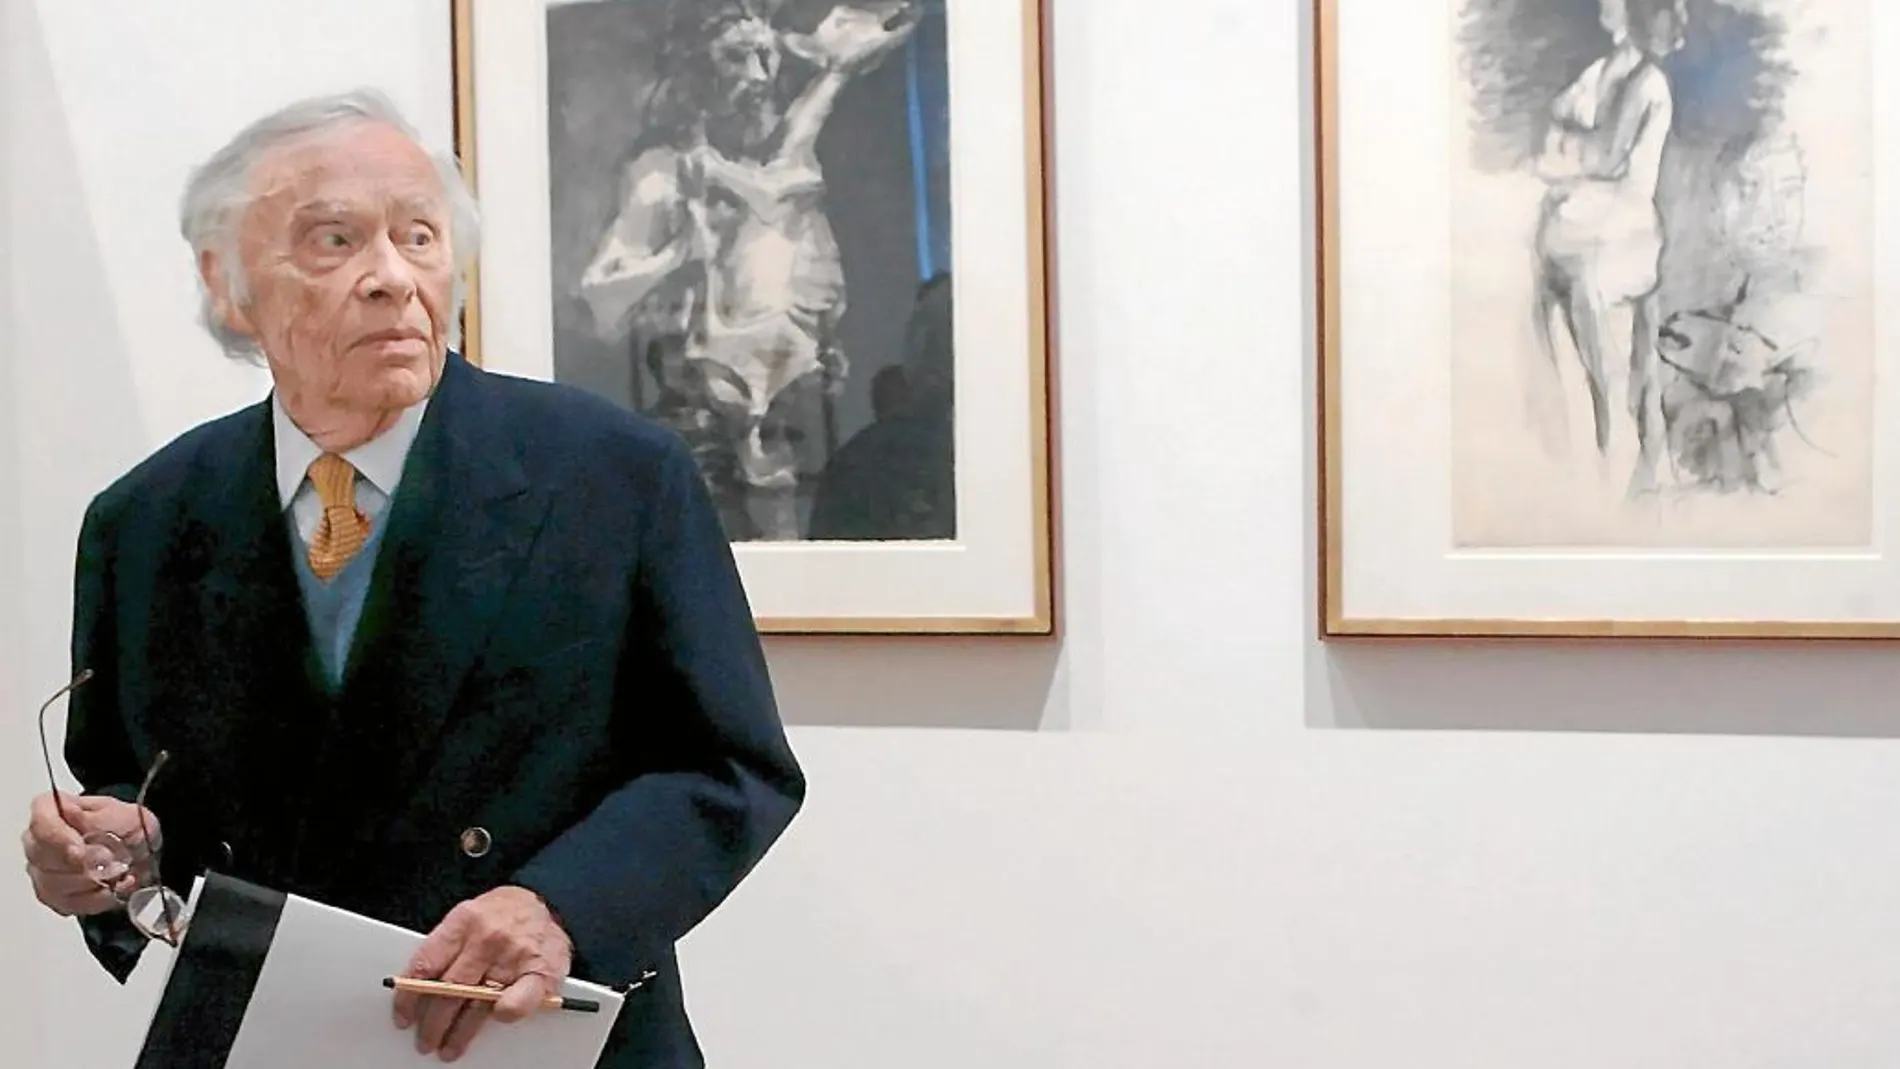 Heinz Berggruen con algunos de los numerosos originales de Pablo Picasso que formaron su extraordinaria colección de arte